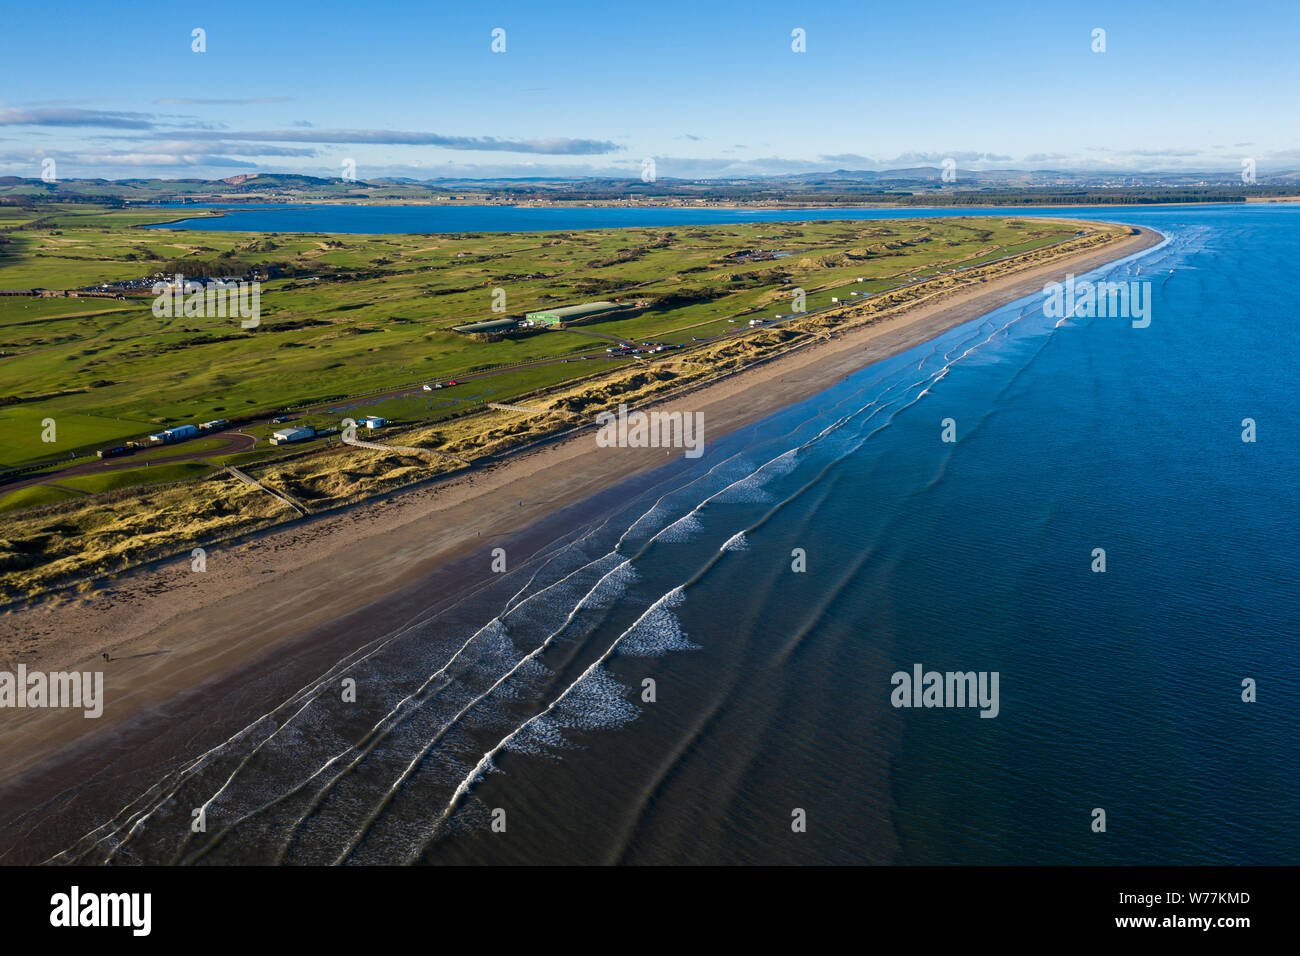 Vista aerea del St Andrews' famoso West sands beach con onde a laminazione. Questa penisola contiene anche il famoso campo da golf links corsi. Foto Stock